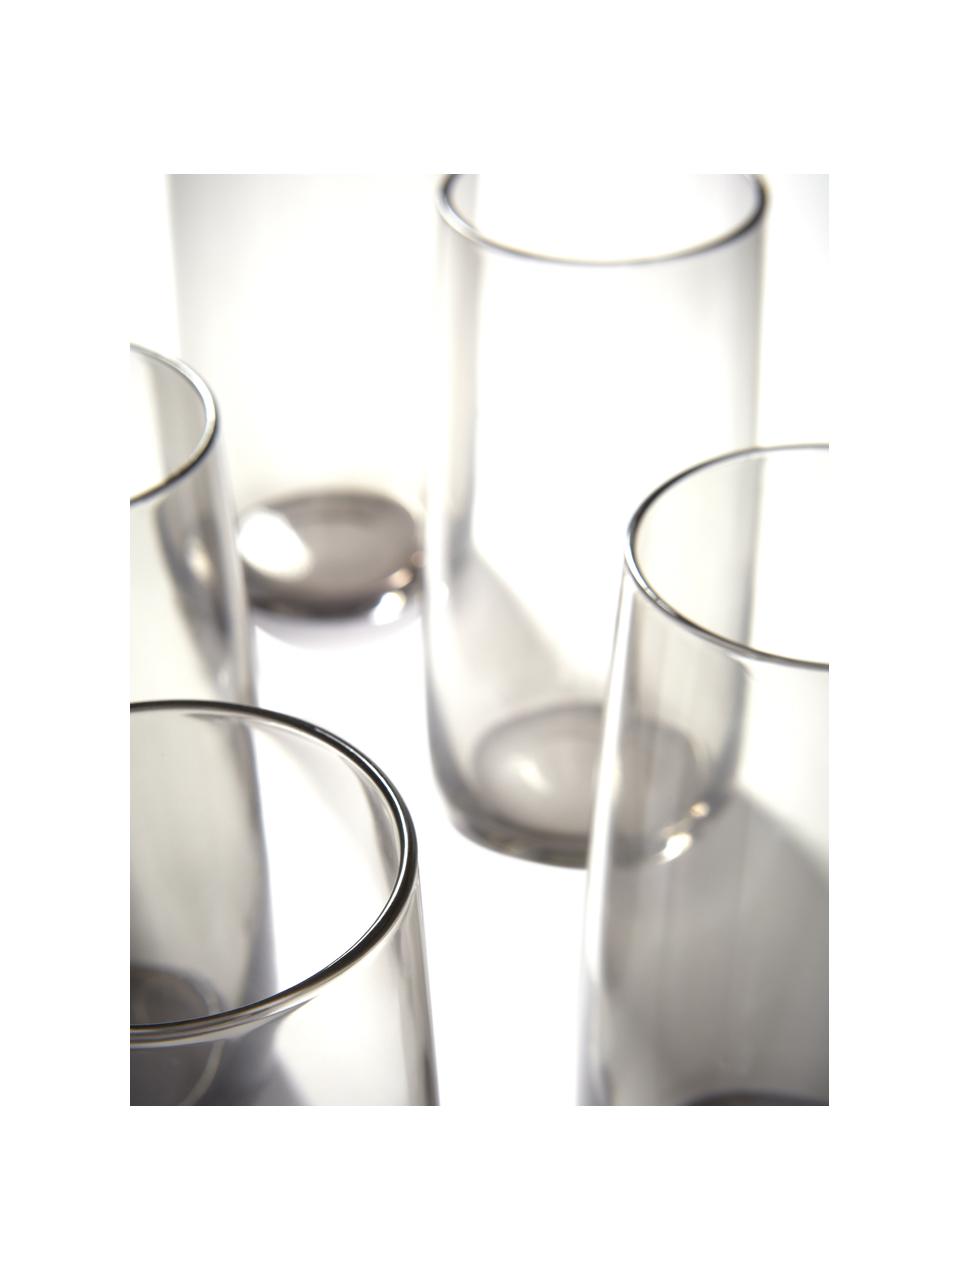 Waterglazen Ciel in grijs, 8 stuks, Glas, Transparant met grijstinten, Ø 8 x H 15 cm, 440 ml